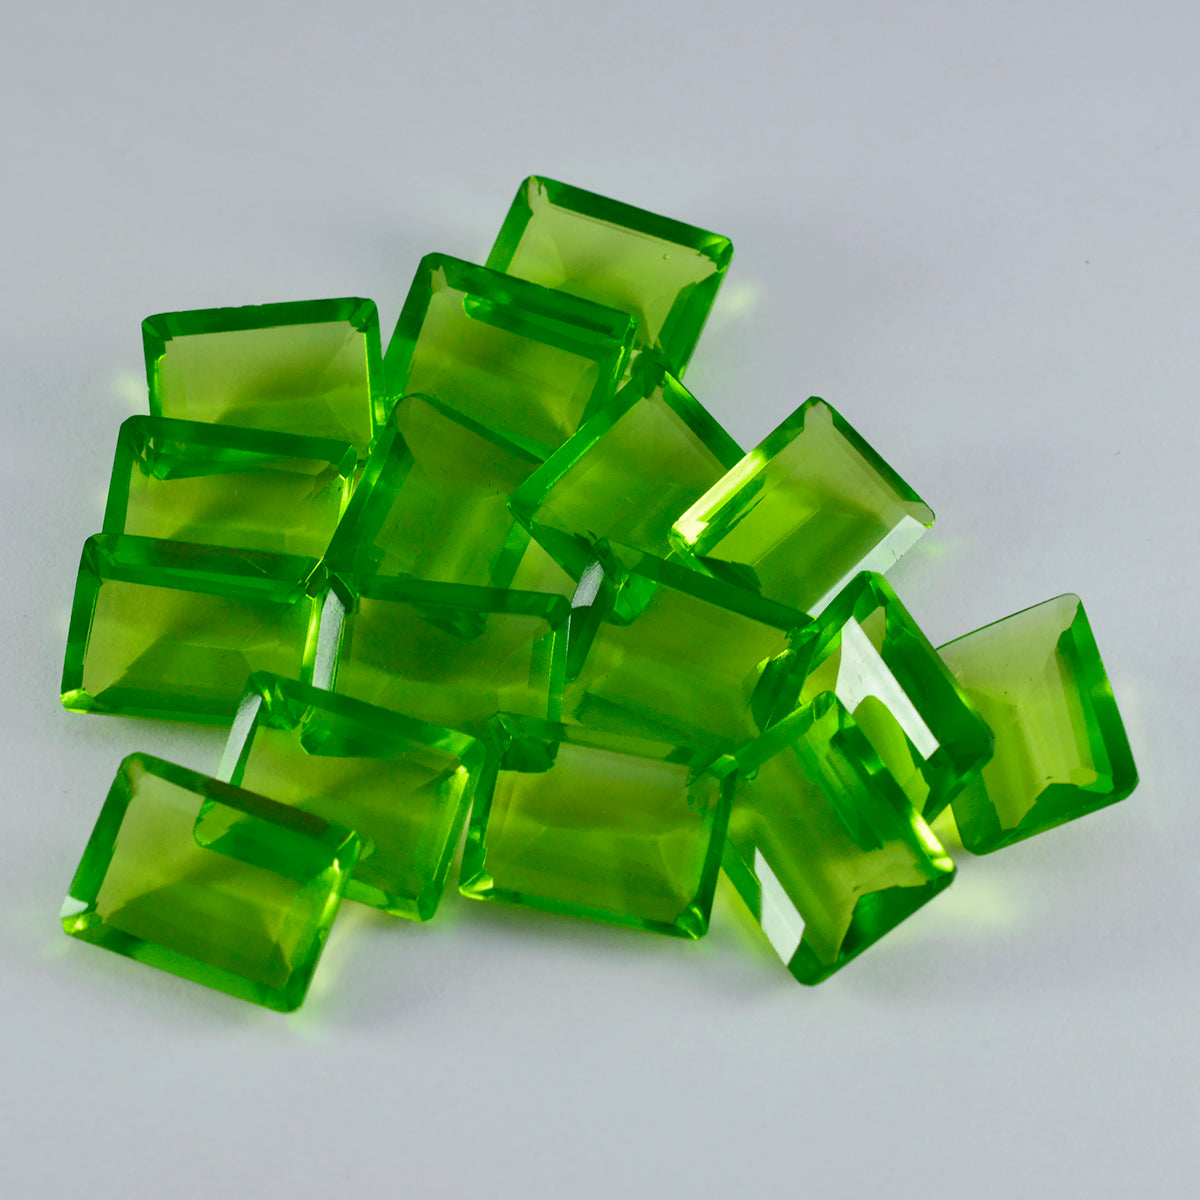 riyogems 1шт зеленый перидот cz ограненный 9x11 мм восьмиугольная форма превосходное качество россыпь драгоценных камней